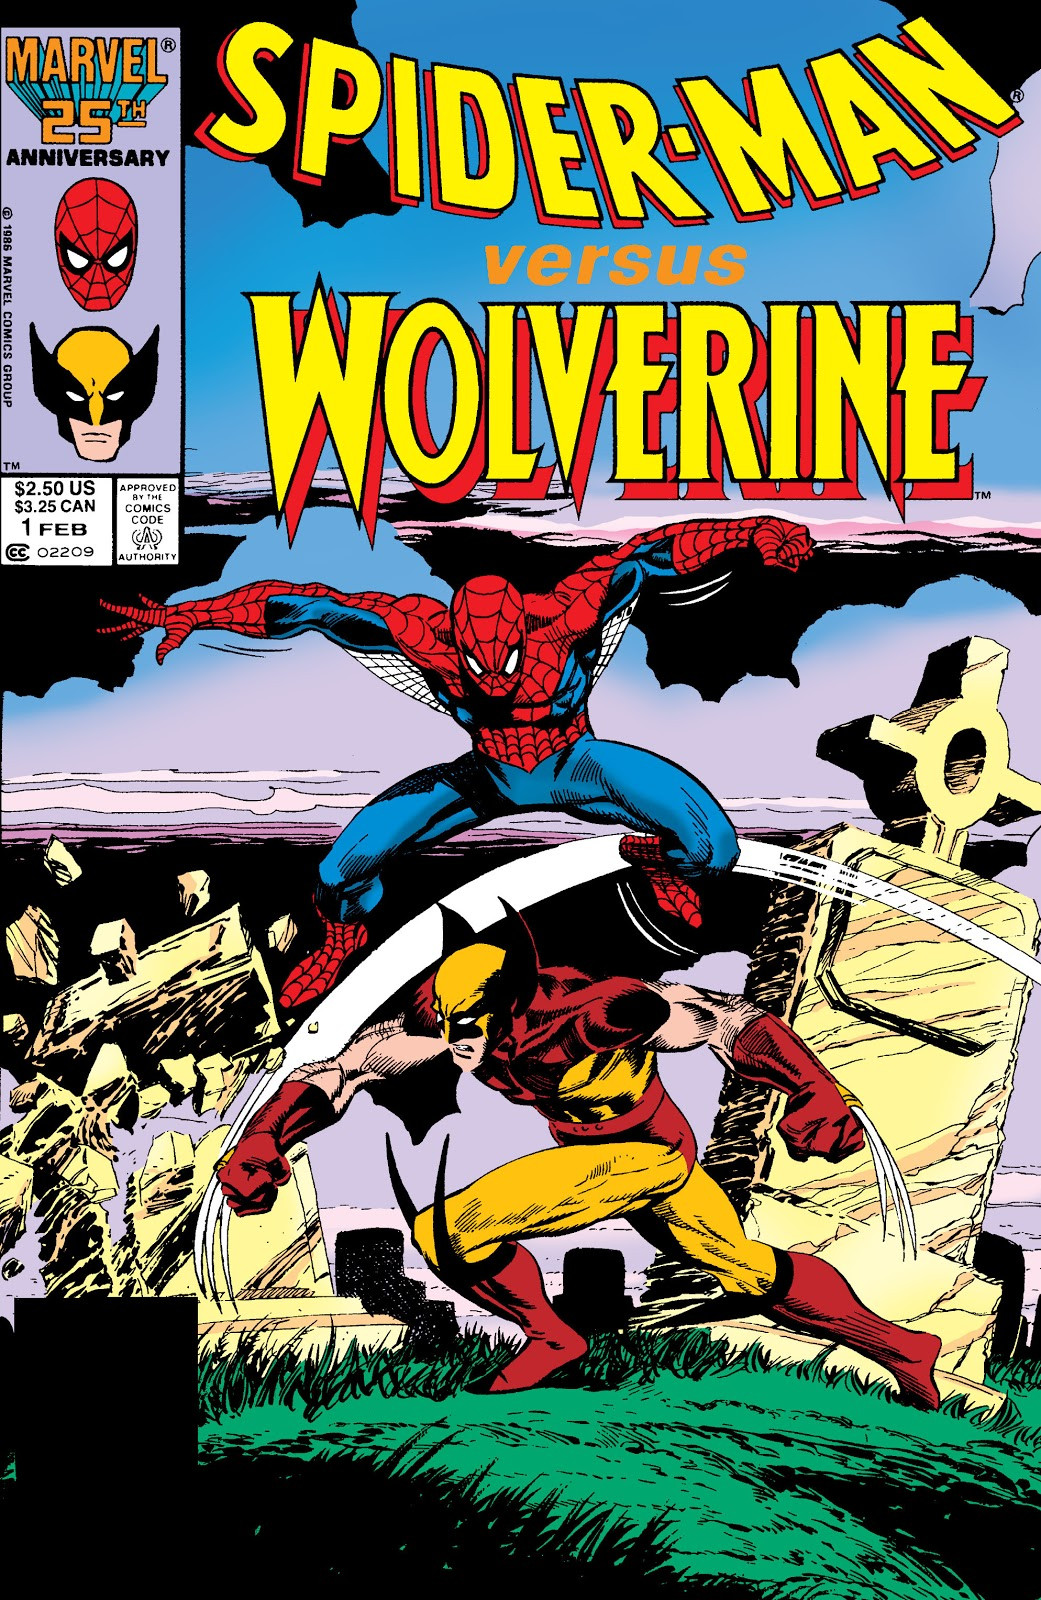 Spider-Man Versus Wolverine Vol 1 1 | Marvel Database | Fandom